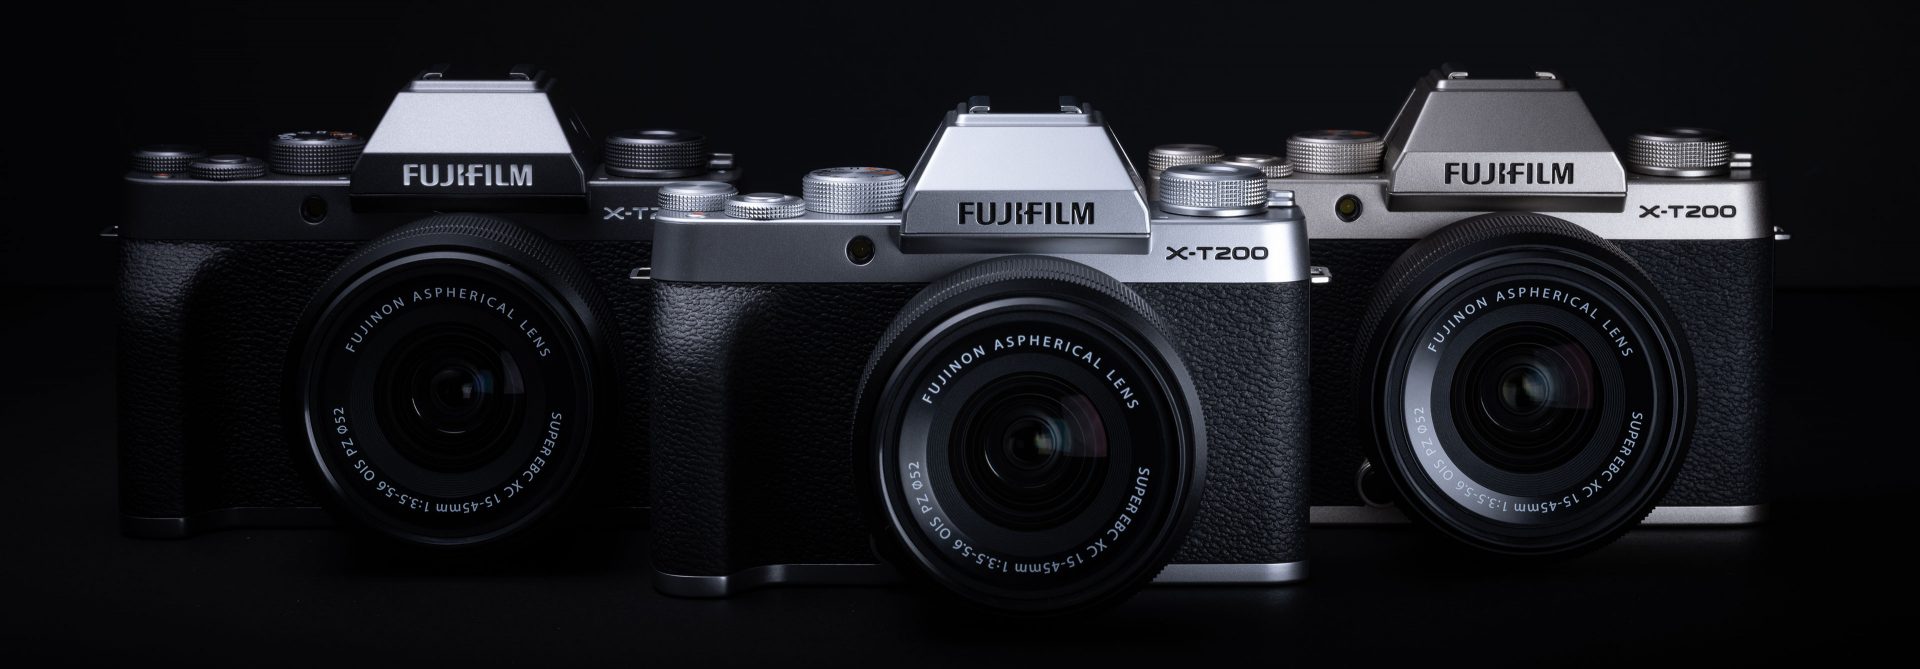 Fujifilm X-T200 camera model